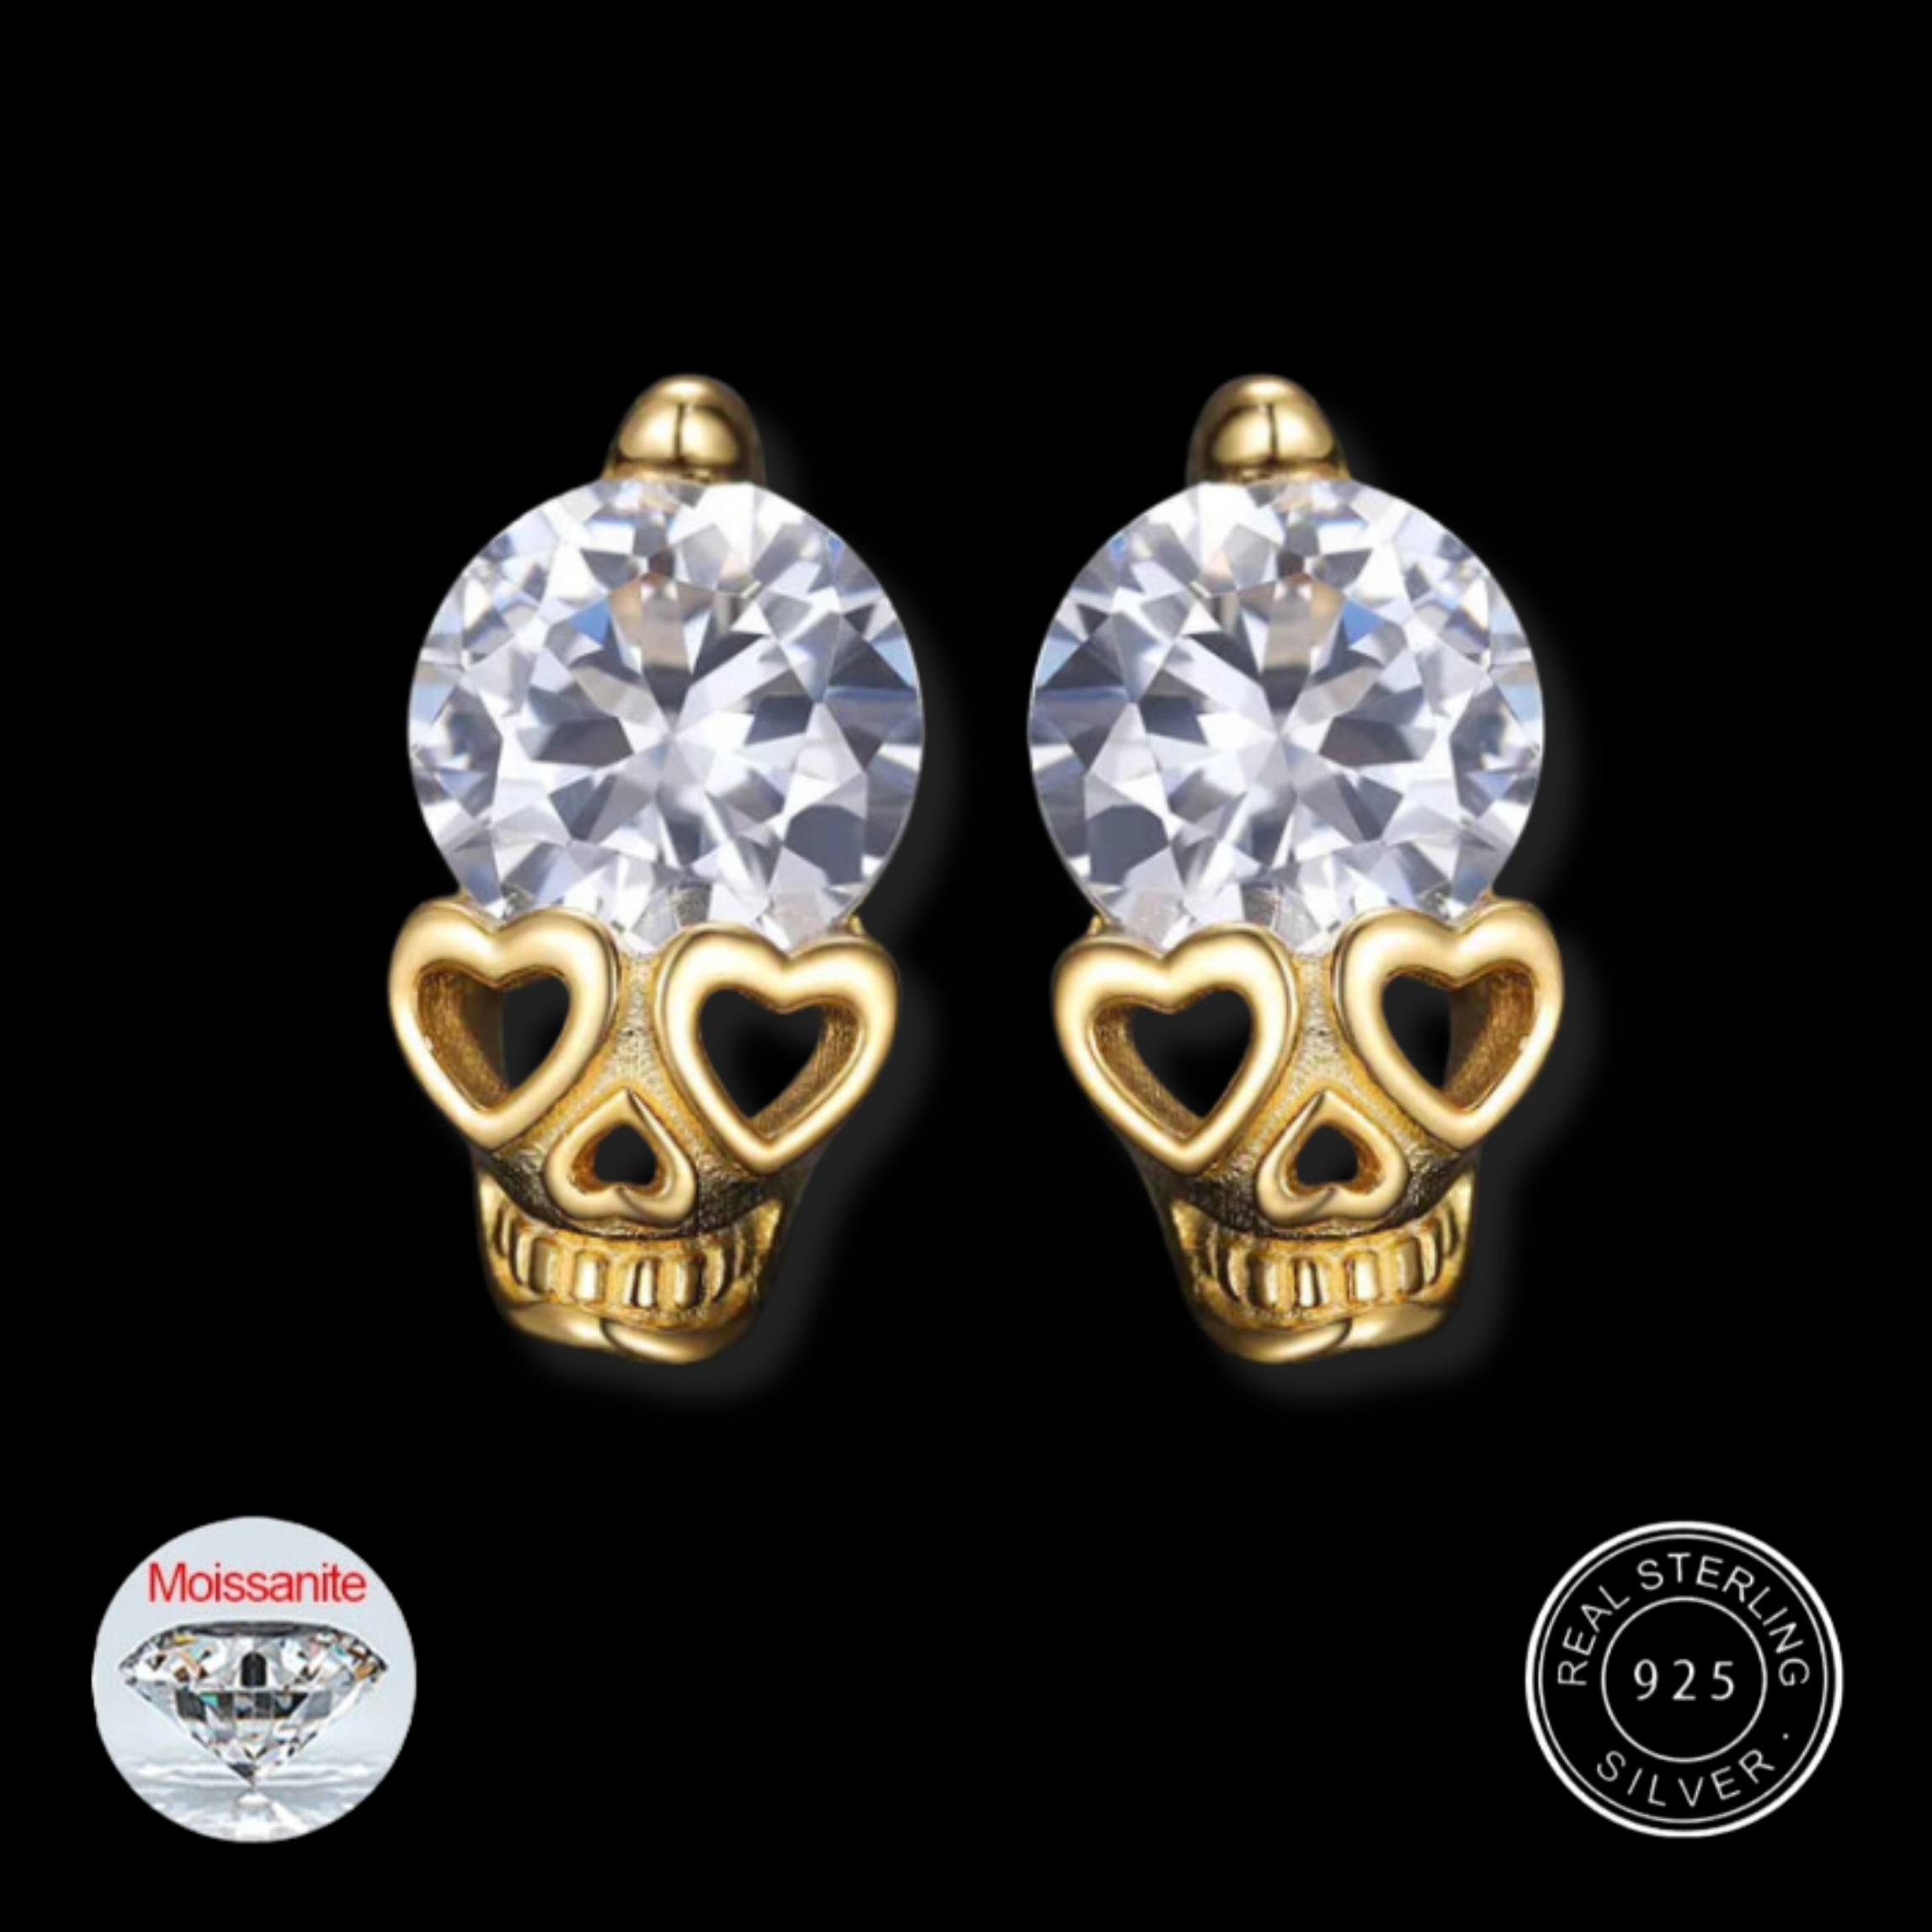 S925 Moissanite Round Cut Skull Diamond Stud Earrings